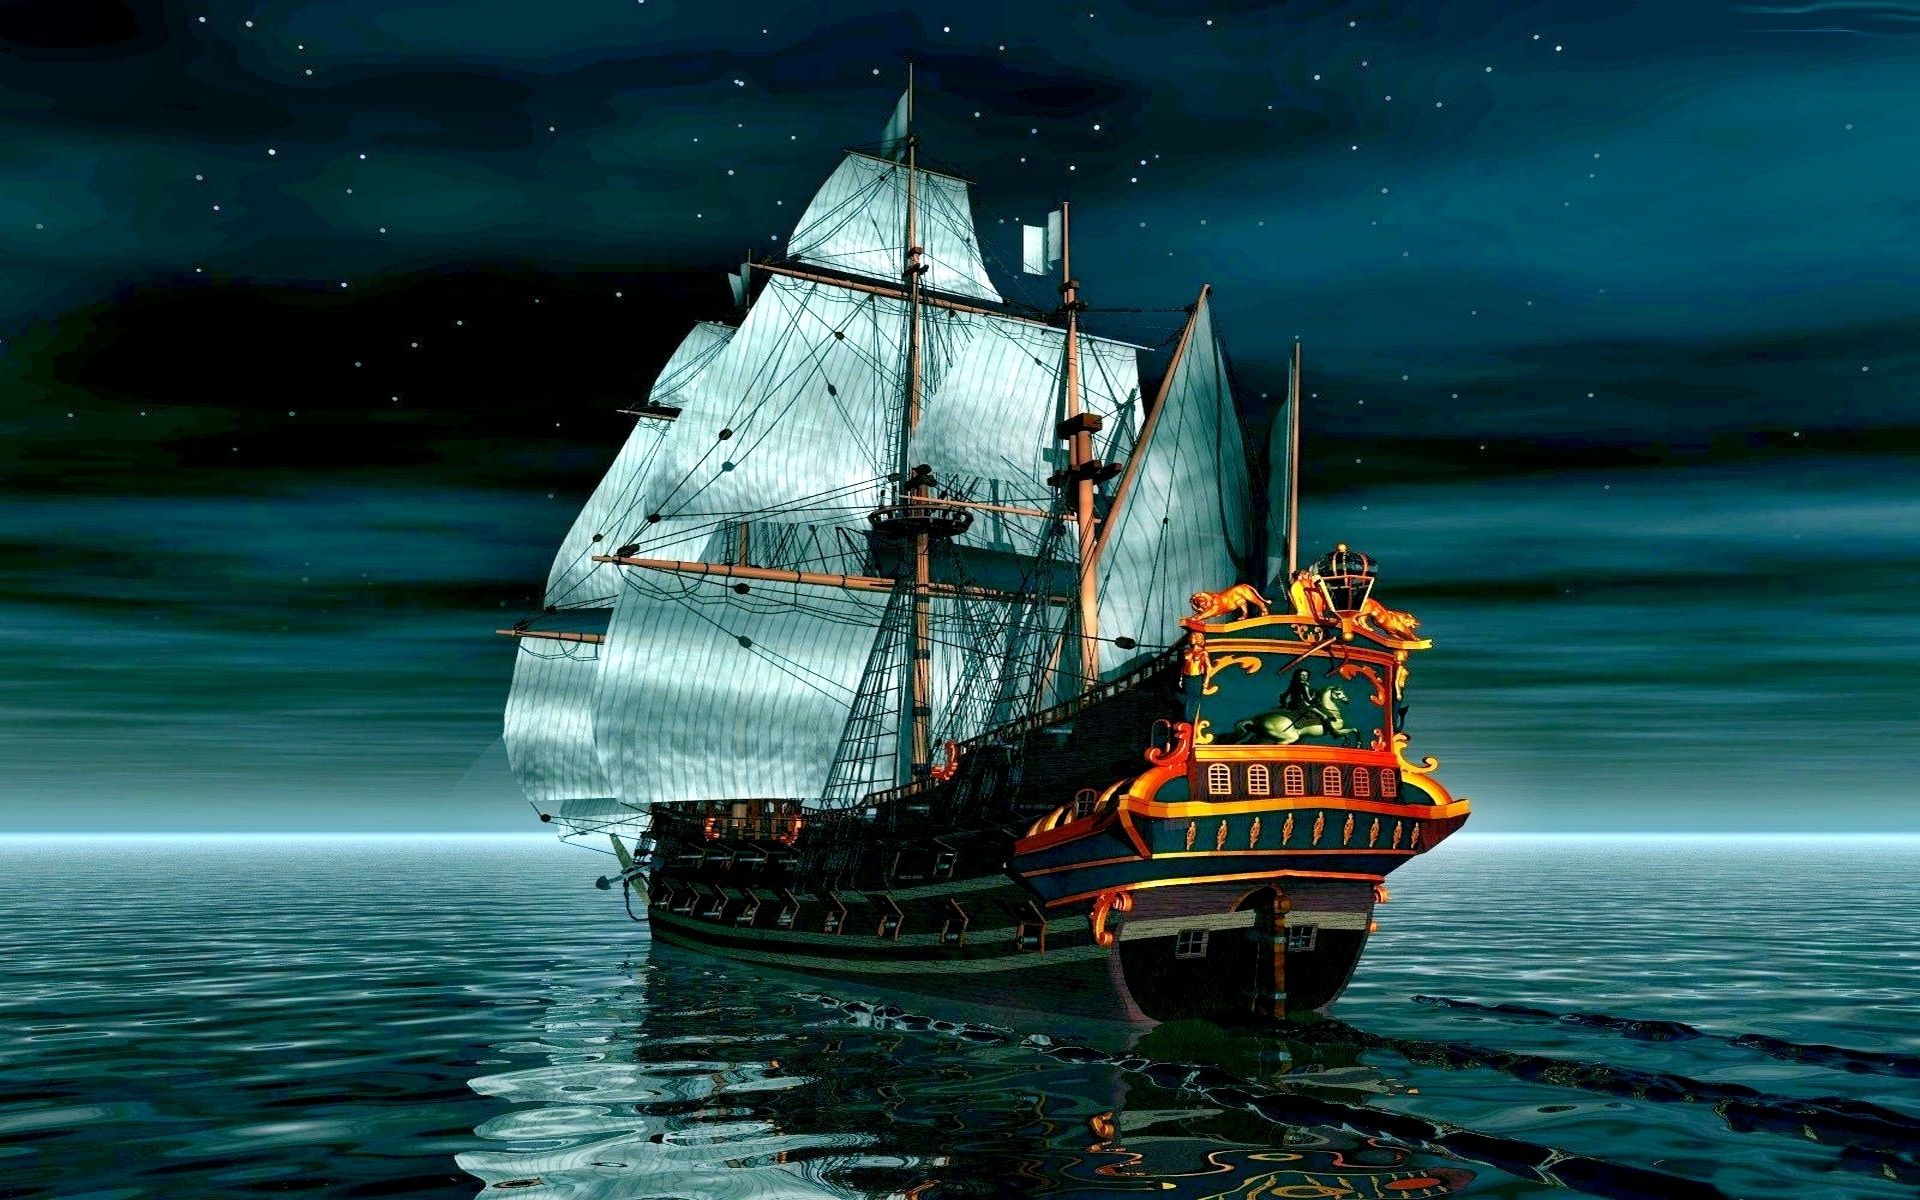 عکس فوق العاده خوشگل کشتی چوبی قدیمی در شب پرستاره زیبا